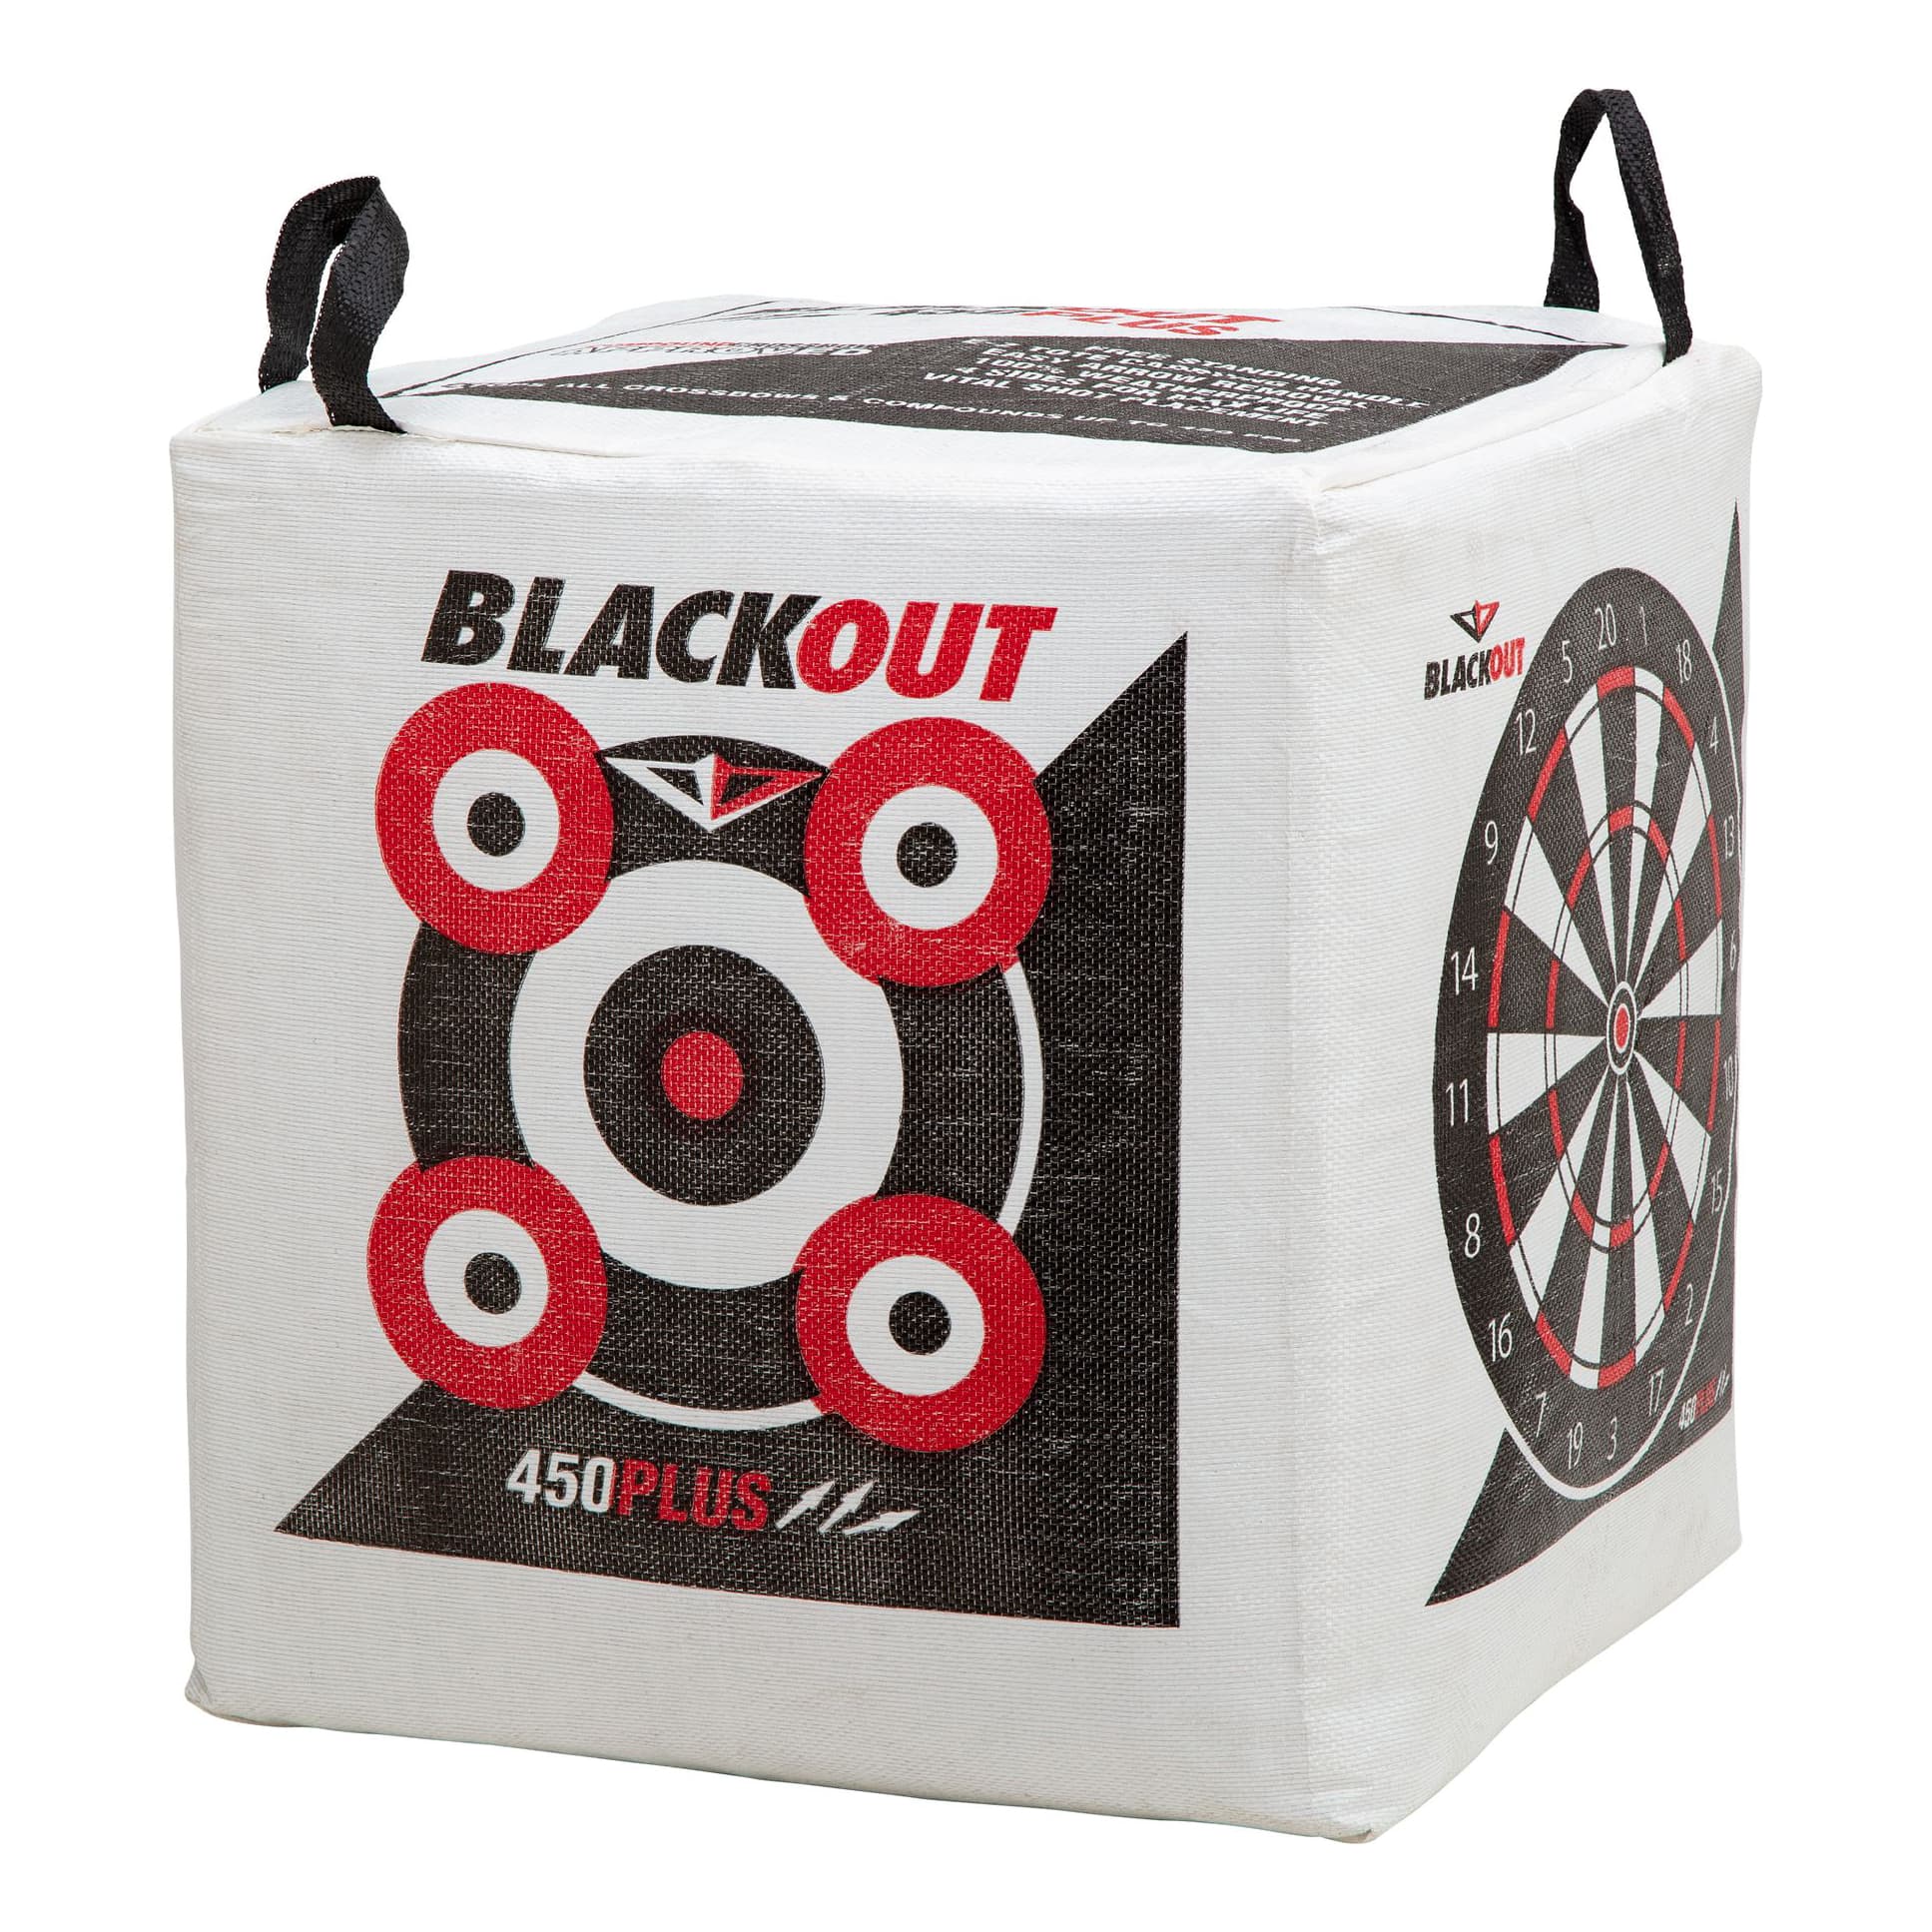 BlackOut X-Treme 450 FPS Field Point Target - Cabelas - BLACKOUT 